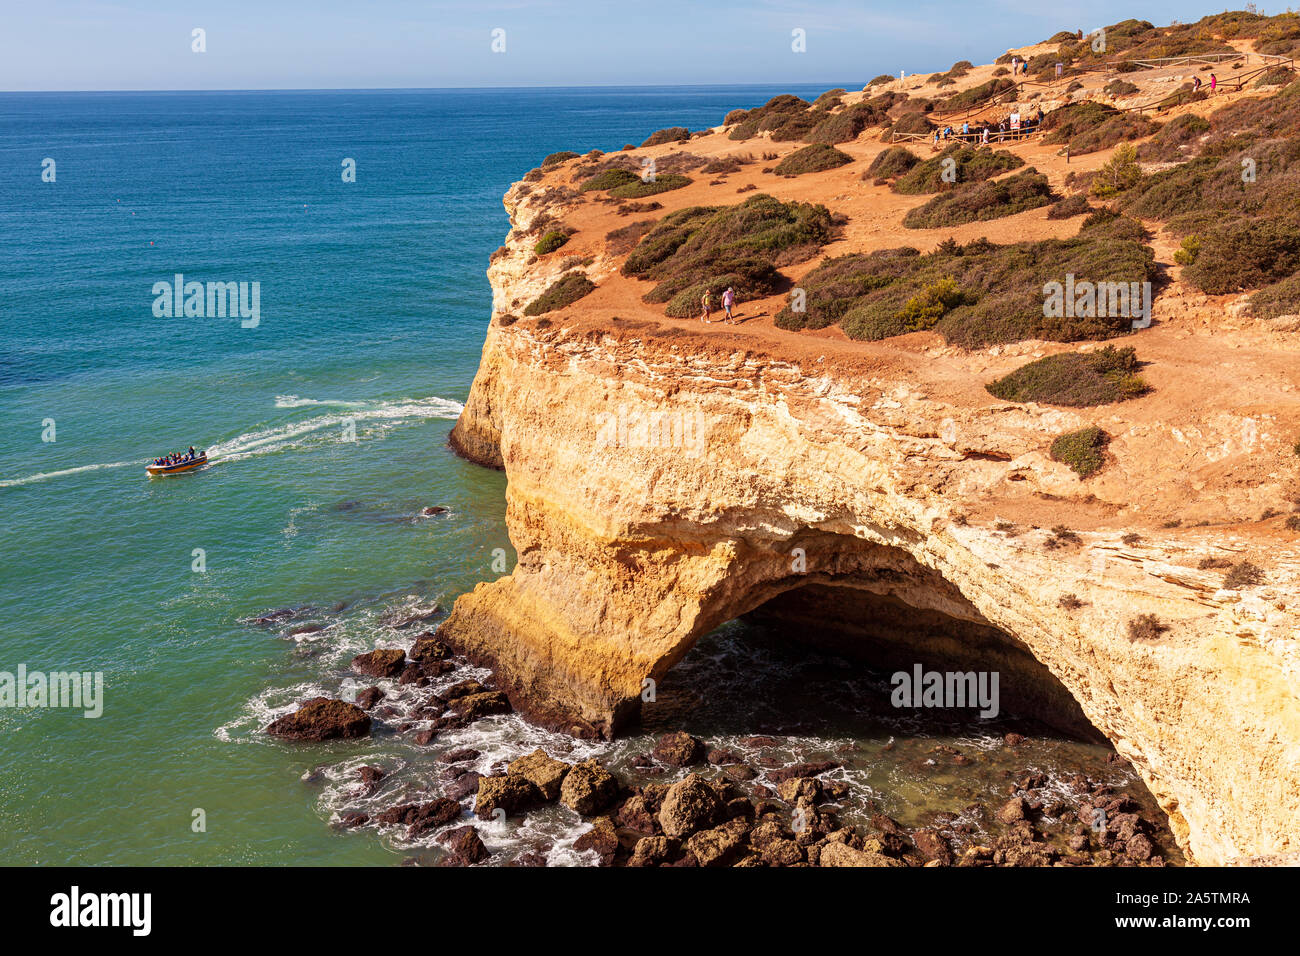 Benagil est un petit village portugais sur la côte atlantique dans la municipalité de Lagoa, Algarve, Benagil grottes sont un endroit populaire pour des excursions en mer Banque D'Images